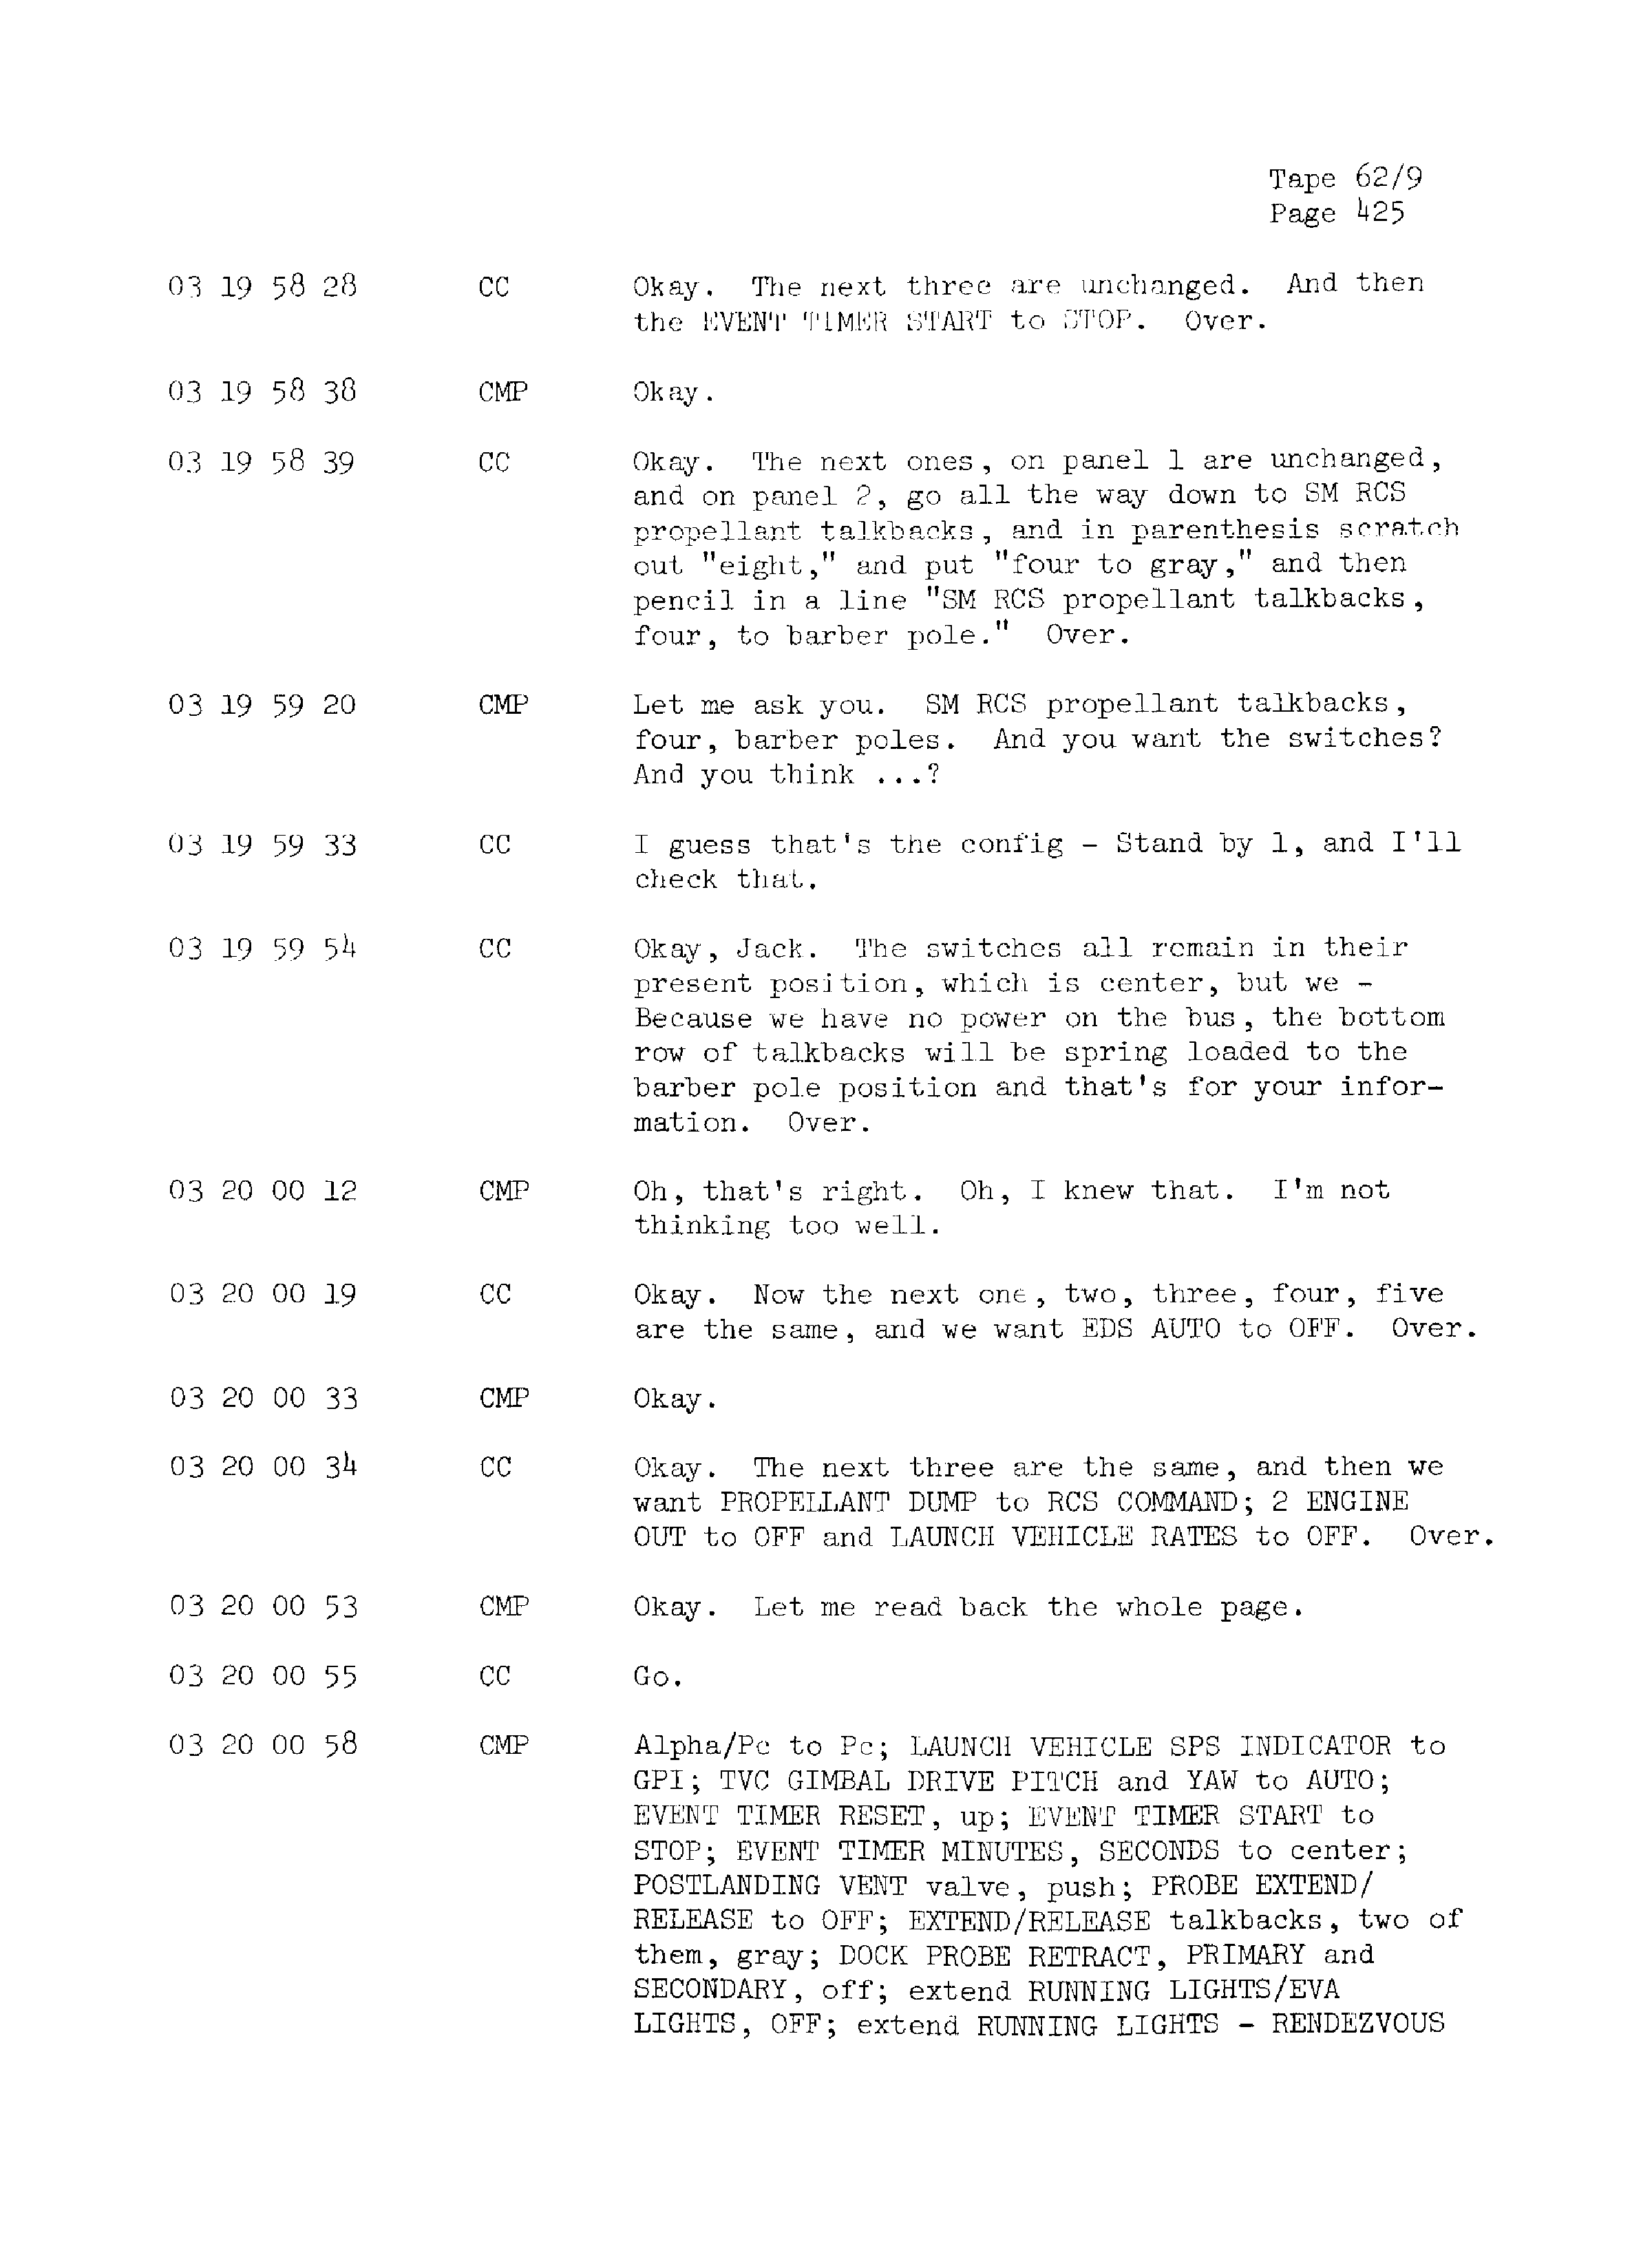 Page 432 of Apollo 13’s original transcript